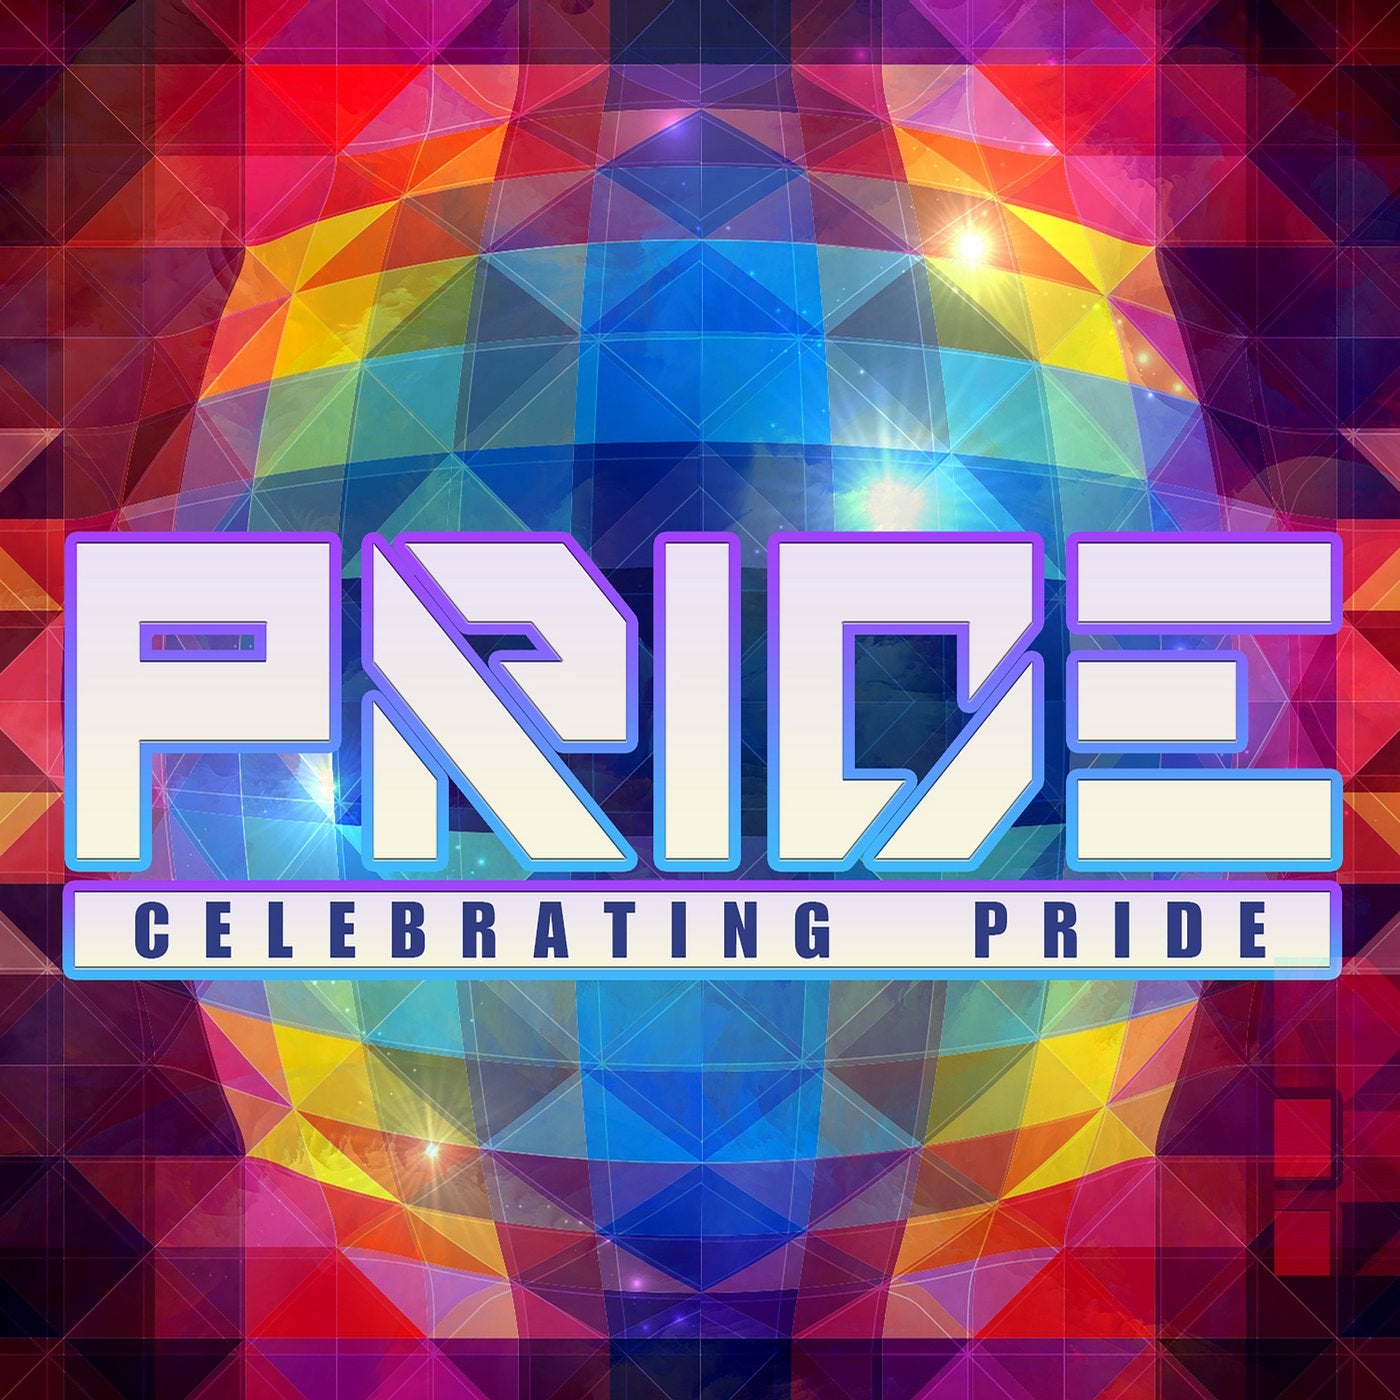 Pride (Celebrating Pride)